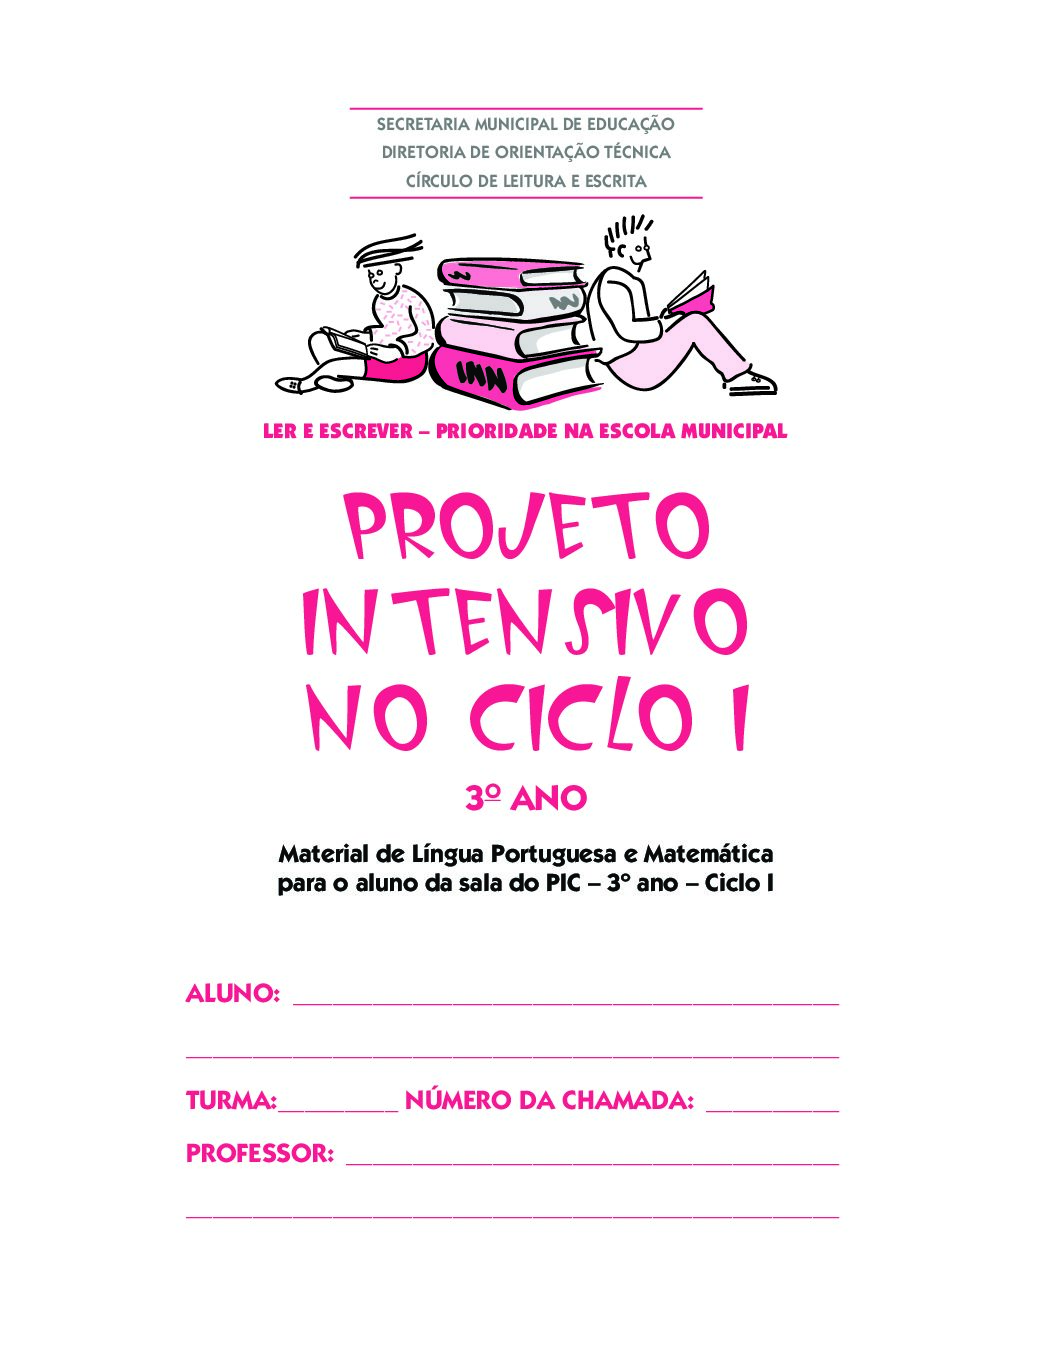 Material com atividades de Língua Portuguesa e Matemática para o estudante da sala do Projeto Intensivo no Ciclo I – 3º ano.